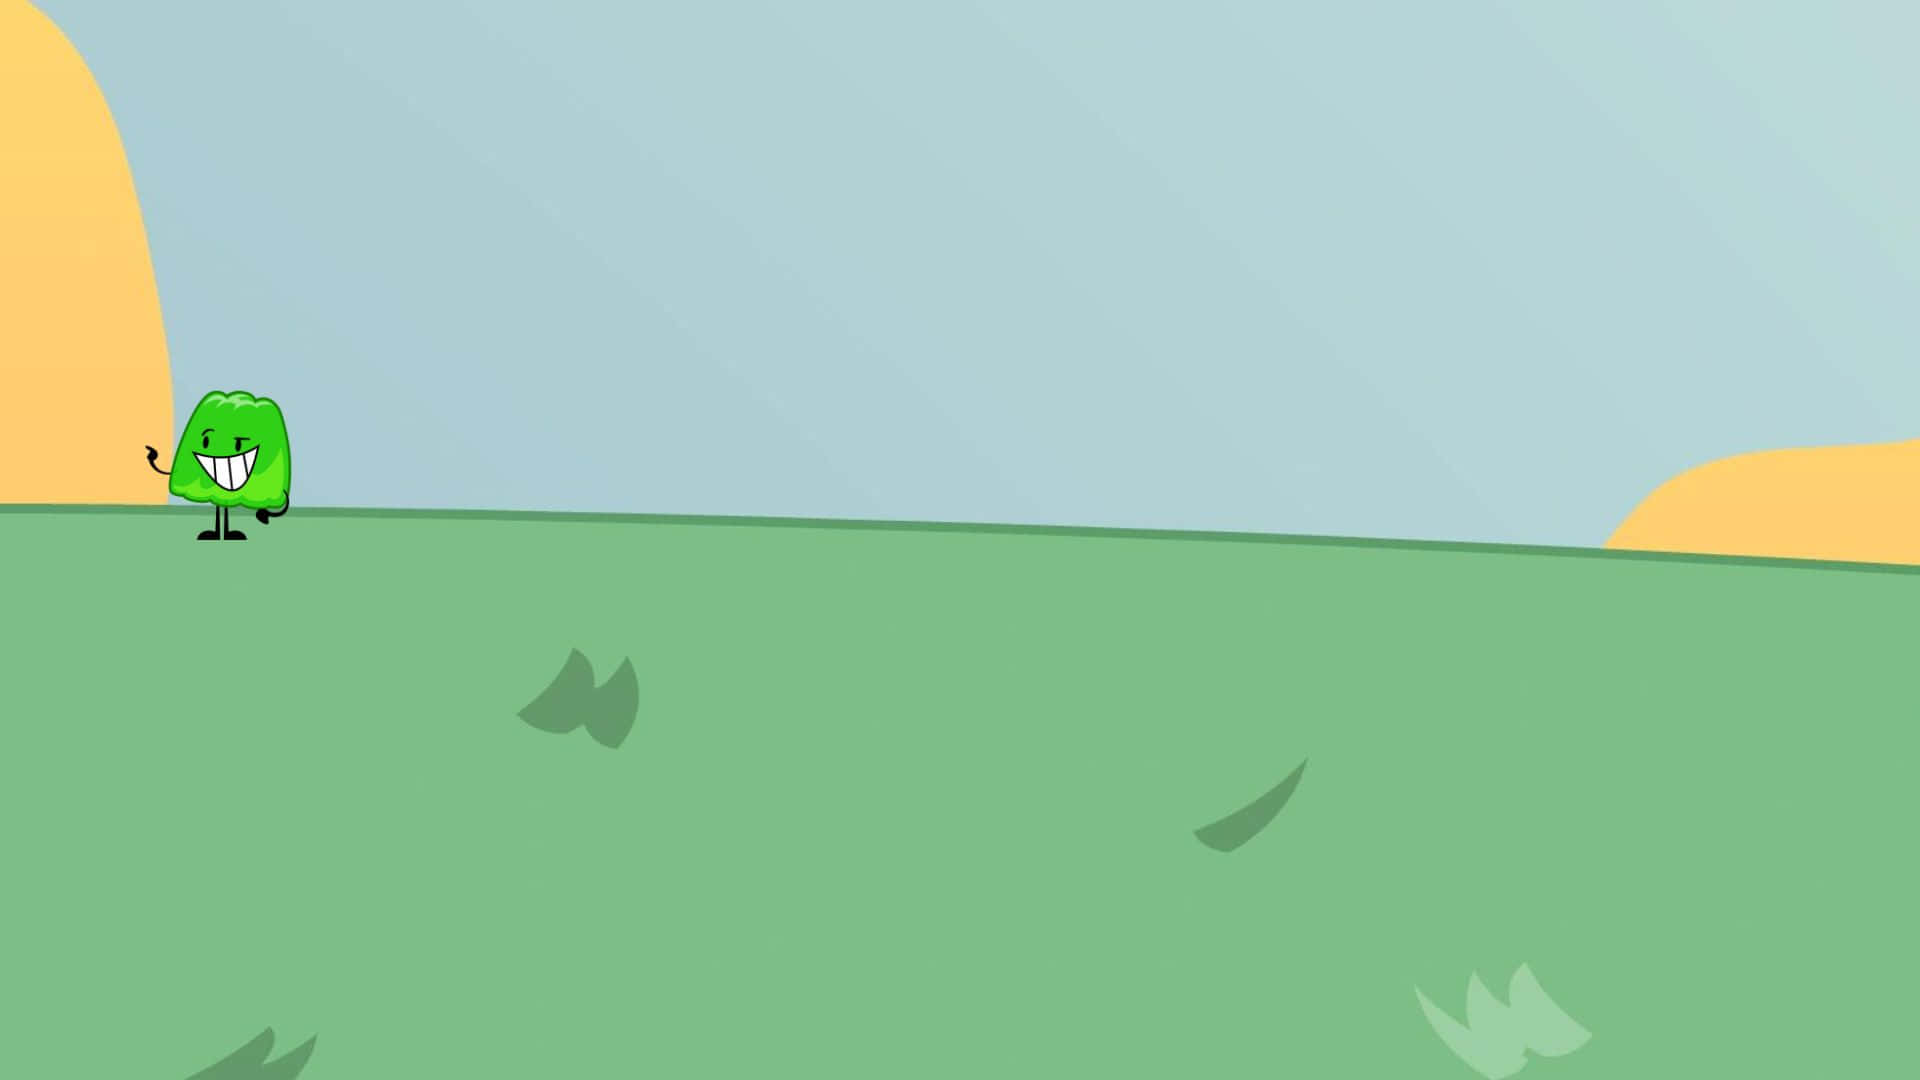 En grøn tegnefilmfigur står i en mark af margueritter.